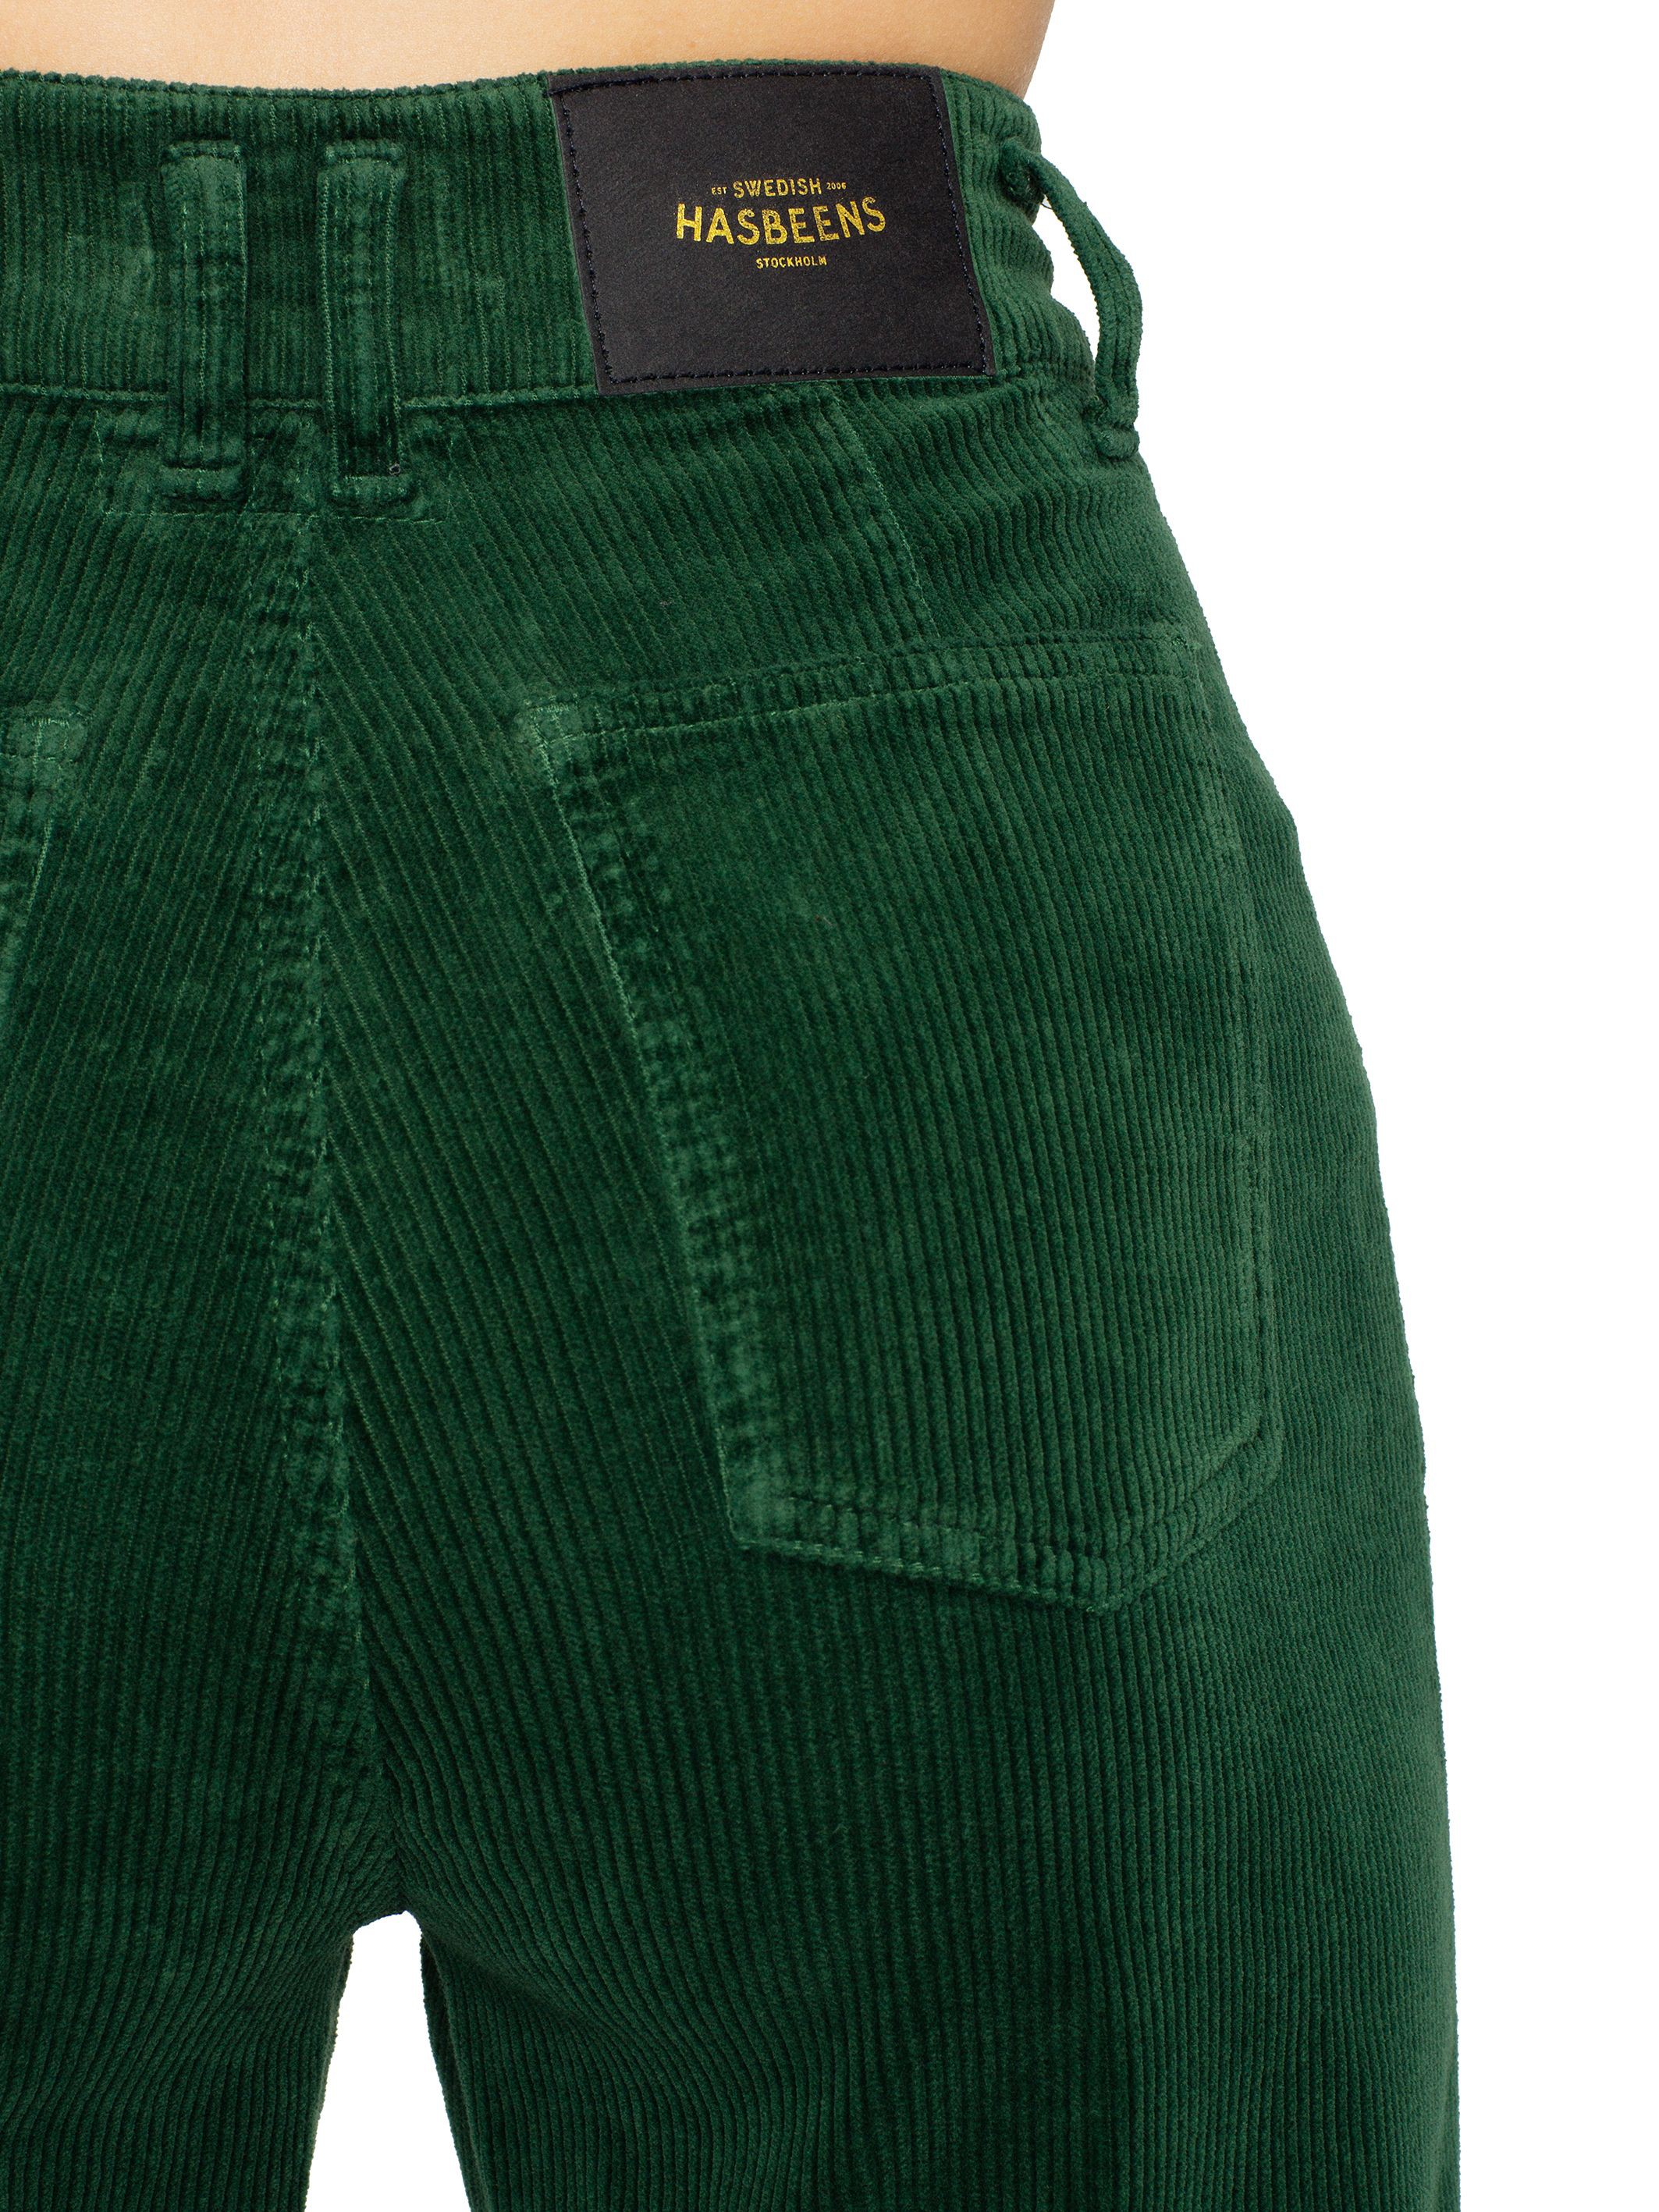 Traje elegante jeans de terciopelo verde, accesorio de moda, hasbeens suecos, bermudas, pantalones cortos activos, tablero corto, camiseta: Traje de camiseta,  traje verde,  Accesorio de moda,  Trajes De Pantalón De Pana  